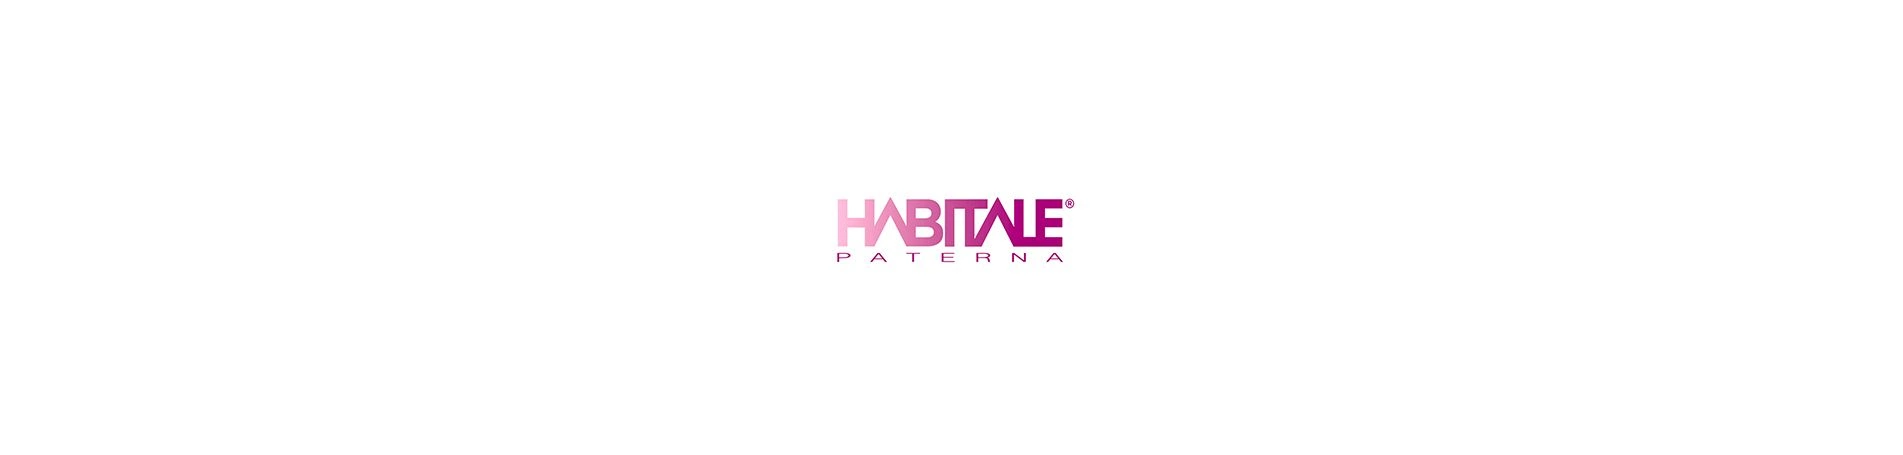 Habitale Paterna, nuevo cliente de Online Marketing Outsourcing en Valencia